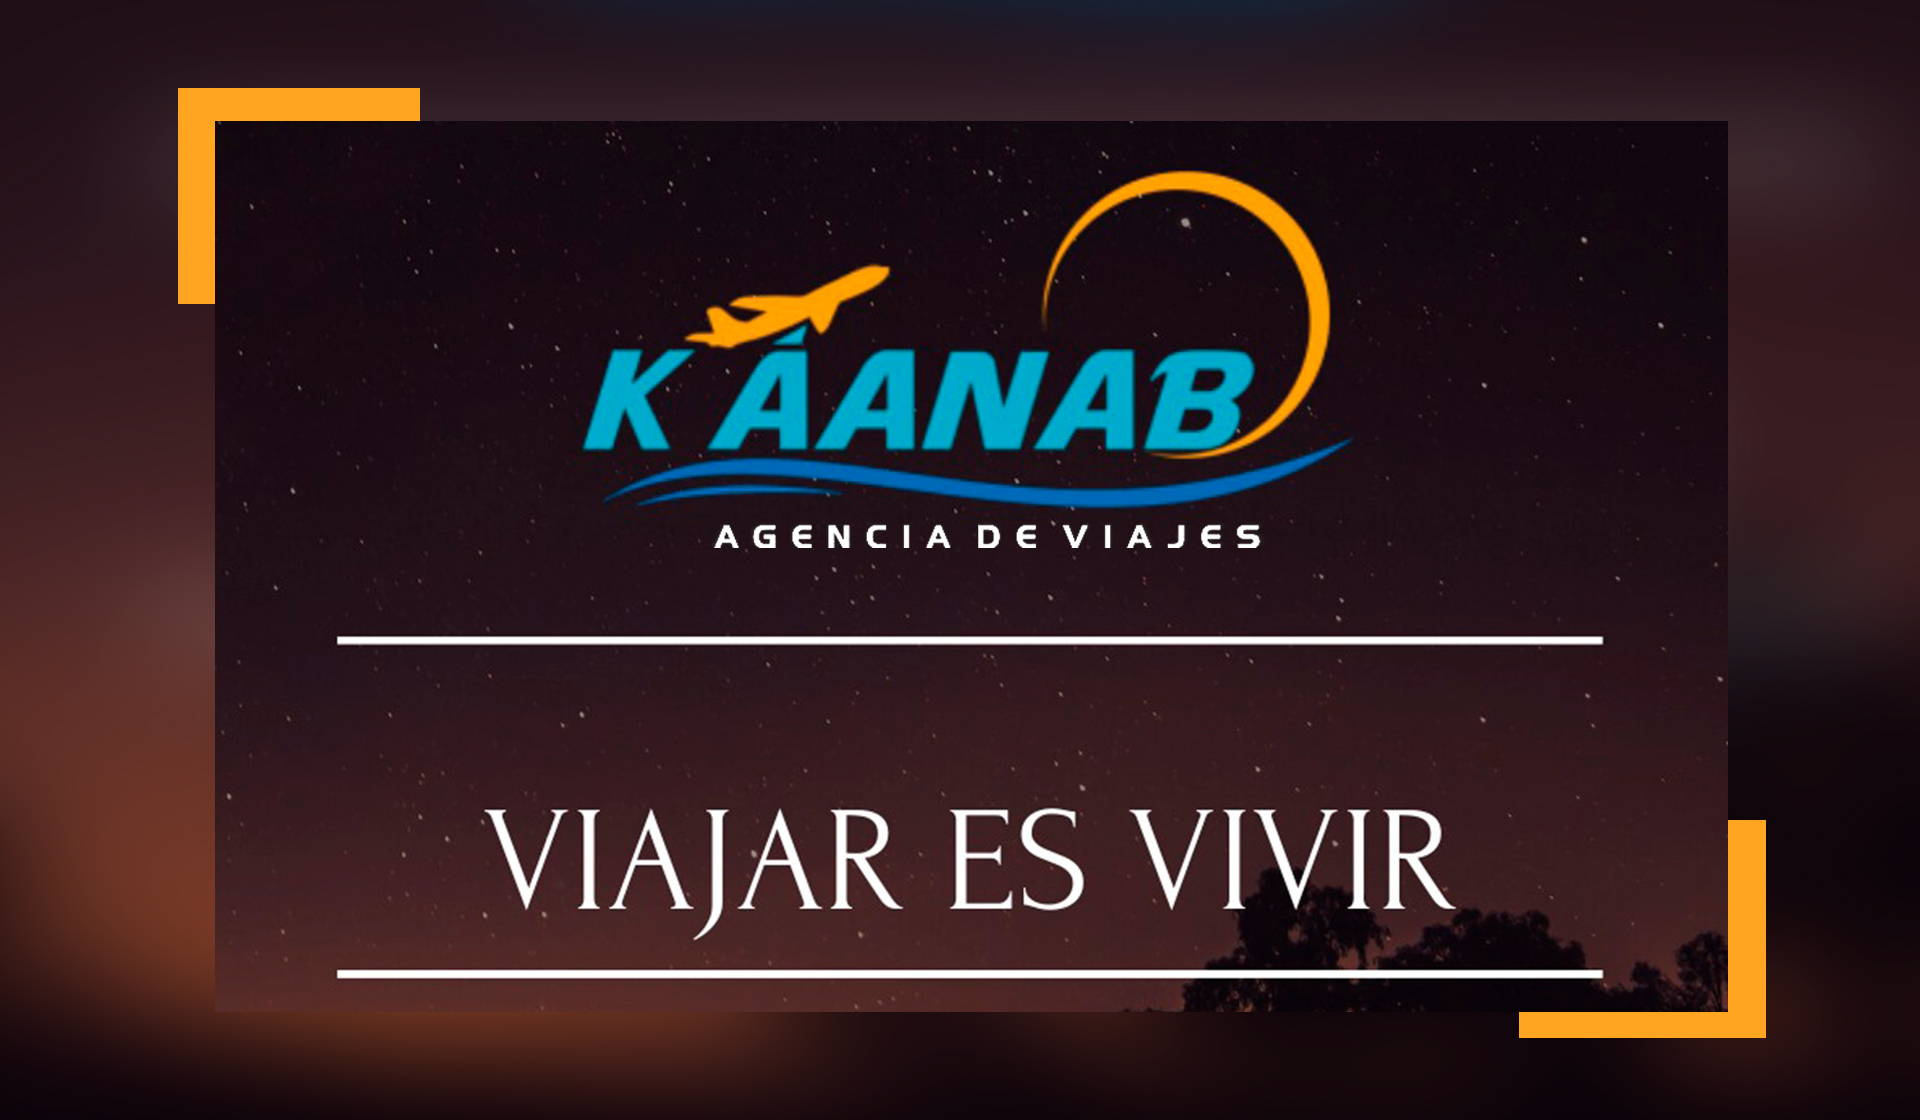 Káanab Agencia de Viajes